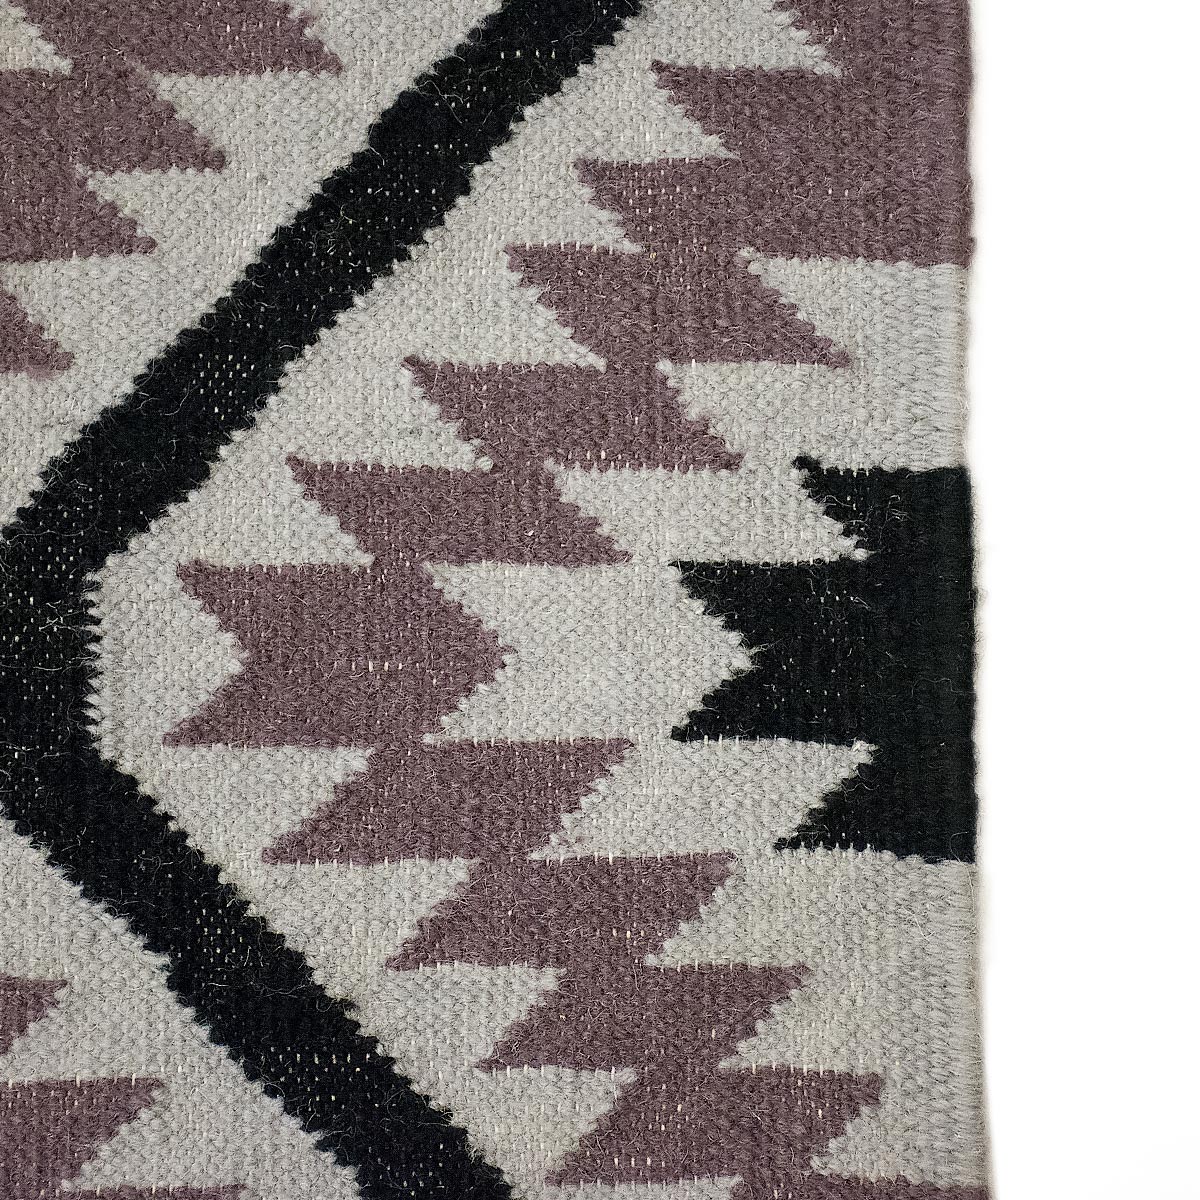 שטיח קילים הדס 11 אפור/סגול/שחור עם פרנזים | השטיח האדום